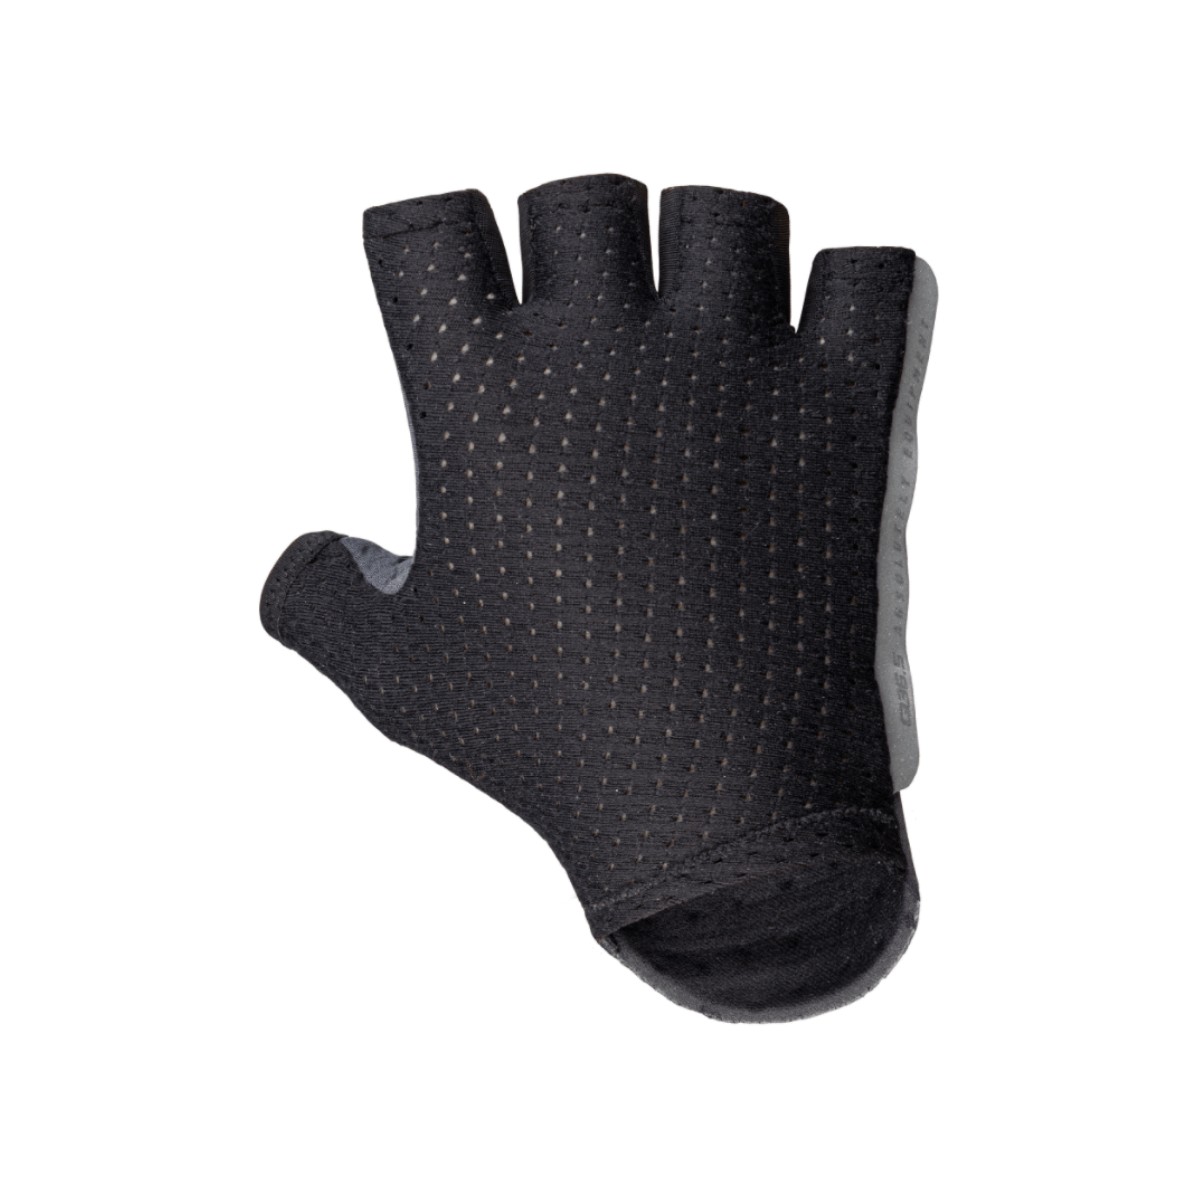 Handschuhe Q36.5 Unique Schwarz, Größe M